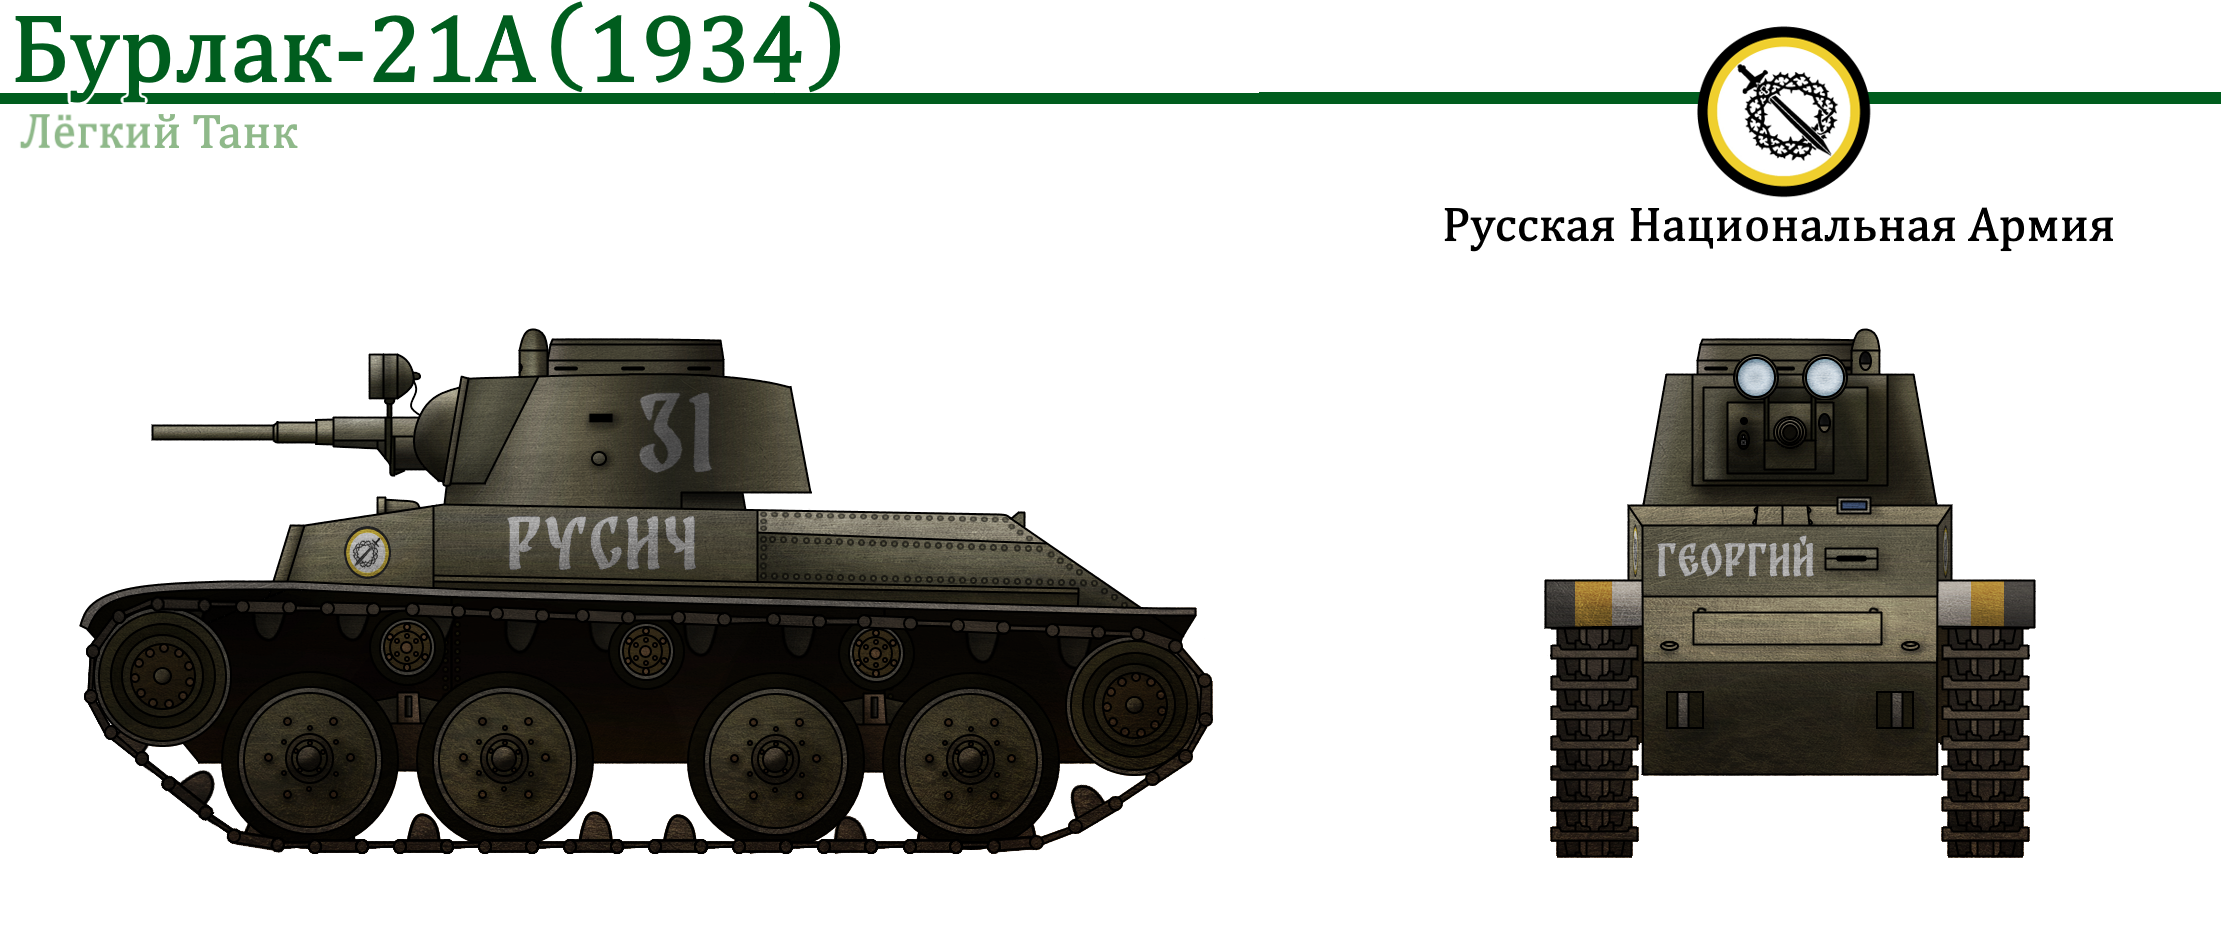 Бурлак-21 и Бурлак-21А (Объект 321). Серия Лёгких Танков для Российской Национальной Республики из Vladkov Conspiracy Theory